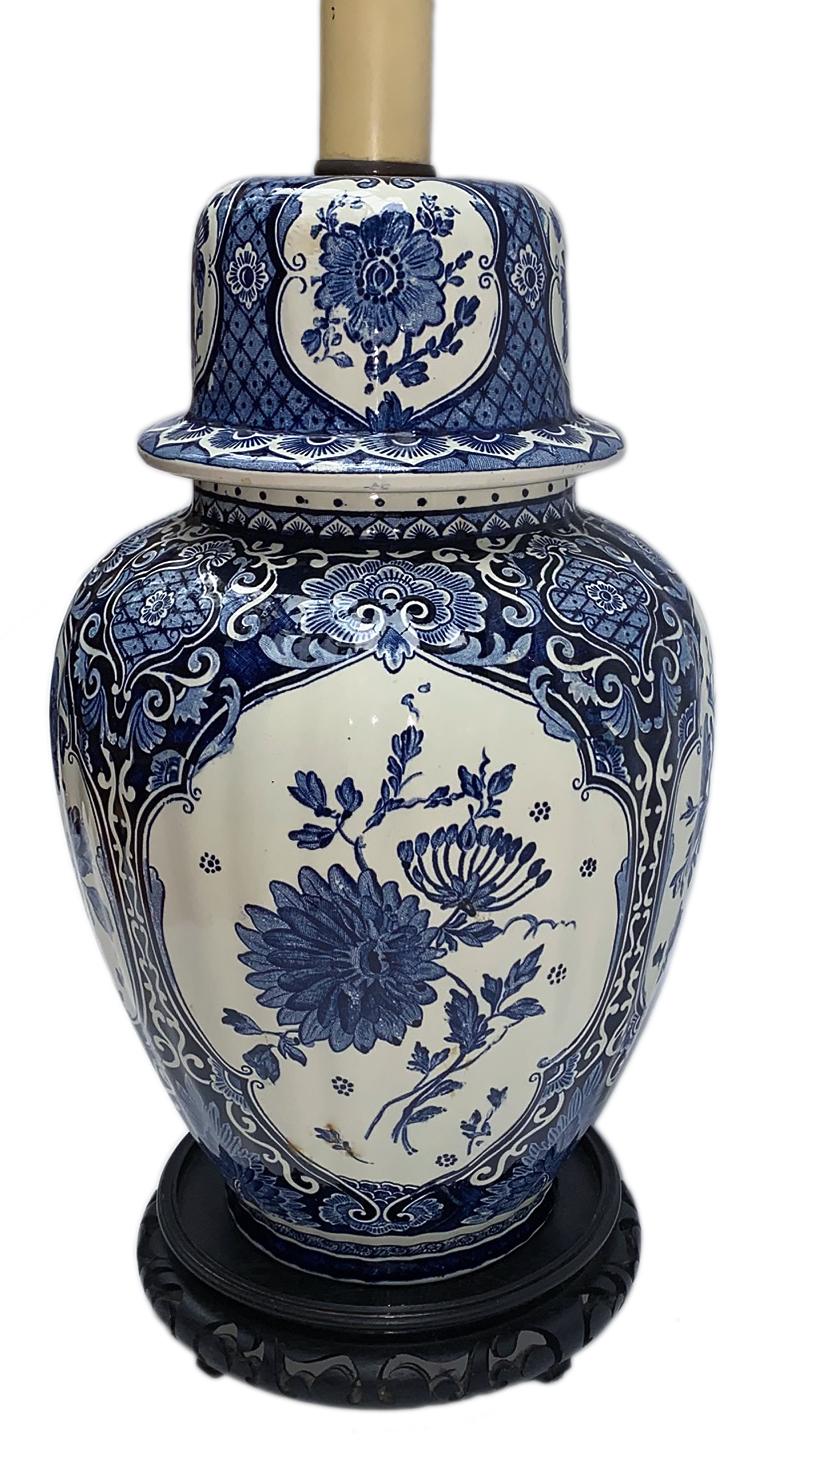 Une paire de lampes de table en porcelaine anglaise datant des années 1920, avec un motif floral et des bases ébénisées.

Mesures
Hauteur du corps : 14,5